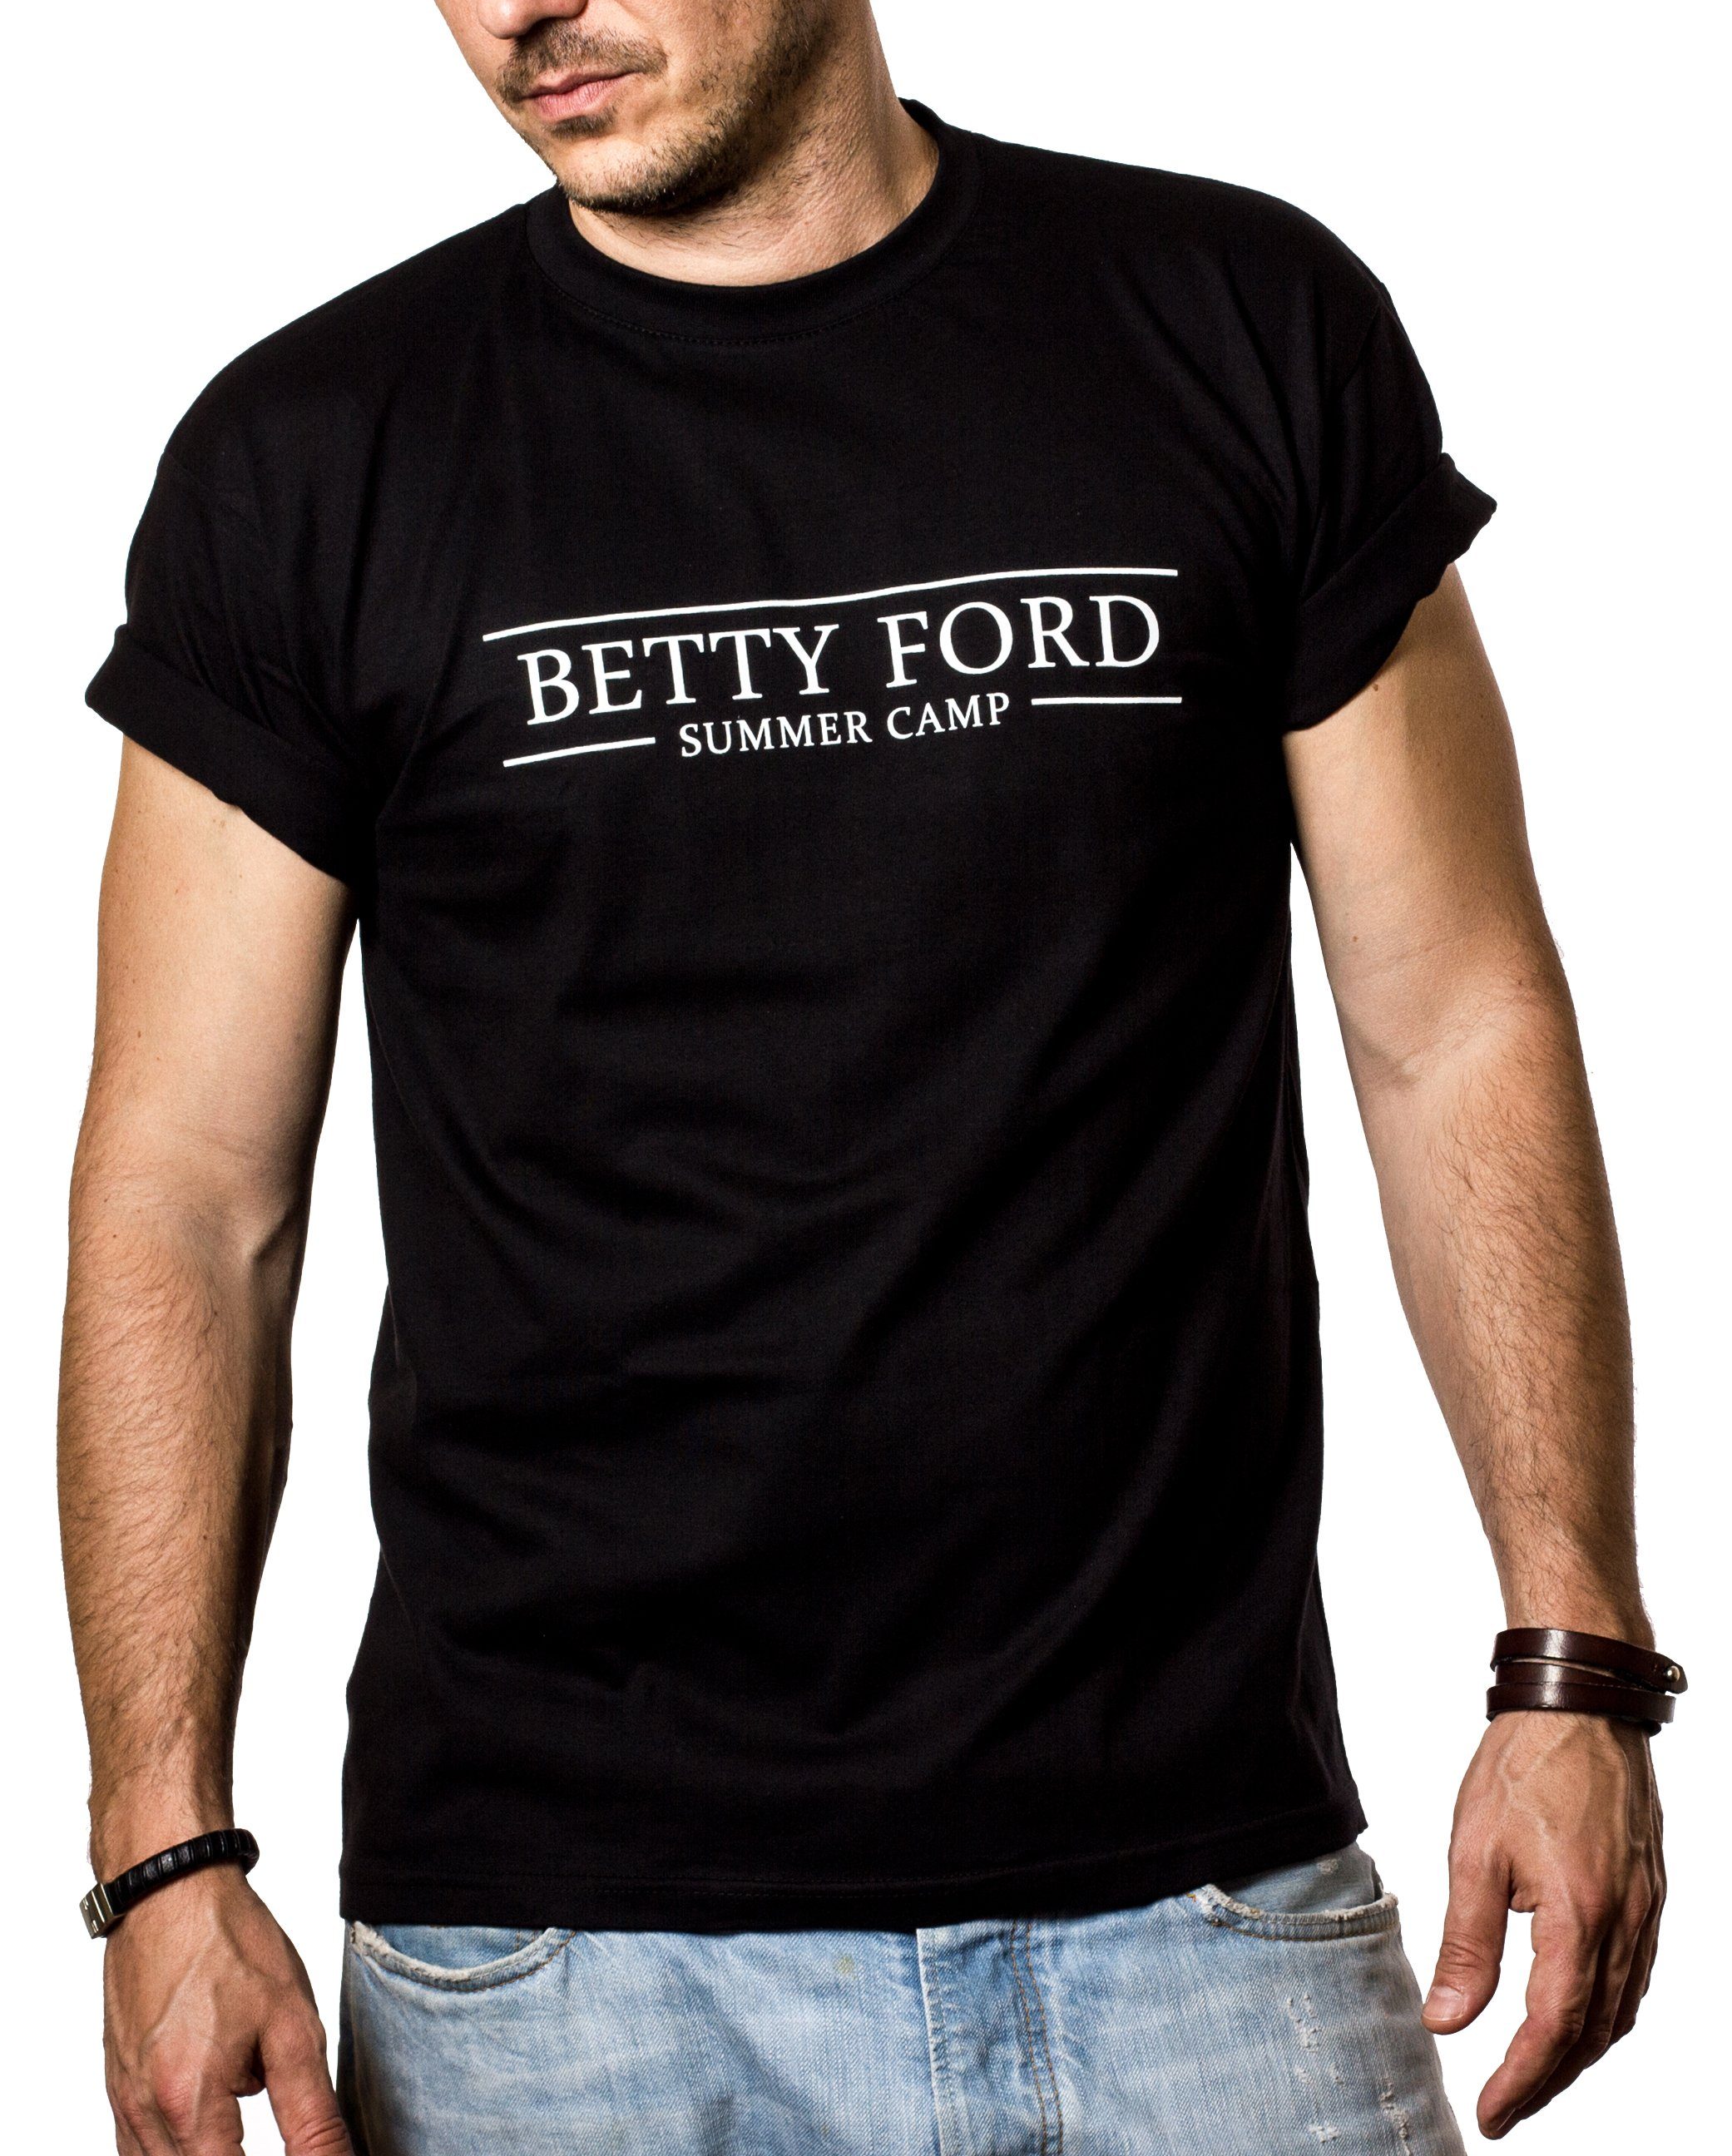 MAKAYA Print-Shirt Sprüche Lustig Summer Outfit Druck Party Ford Herren/Männer Betty Camp mit Grill